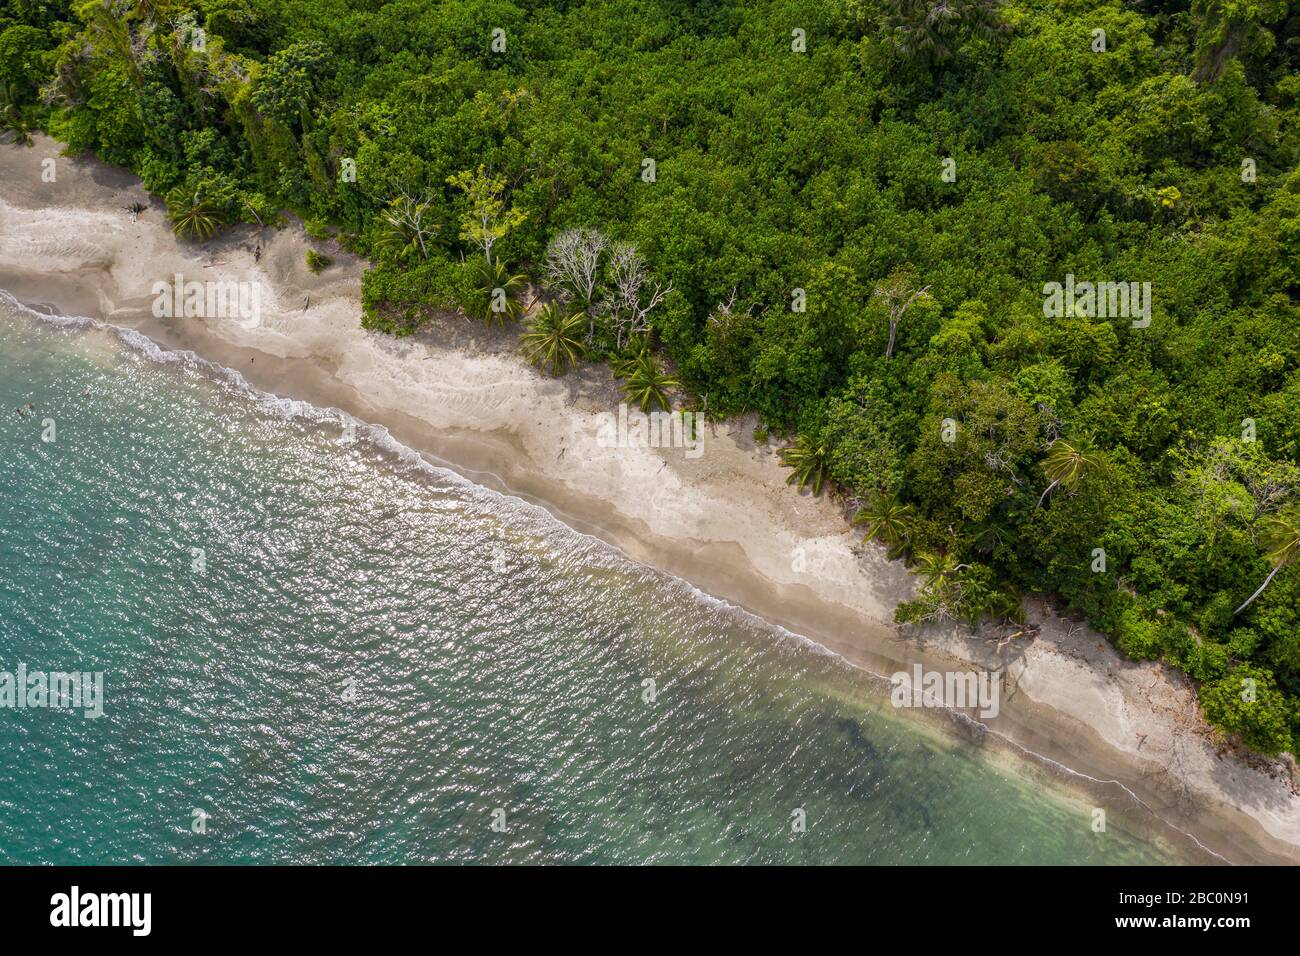 Vue aérienne du parc national de Cahuita le long de la côte sud des Caraïbes du Costa Rica. Banque D'Images